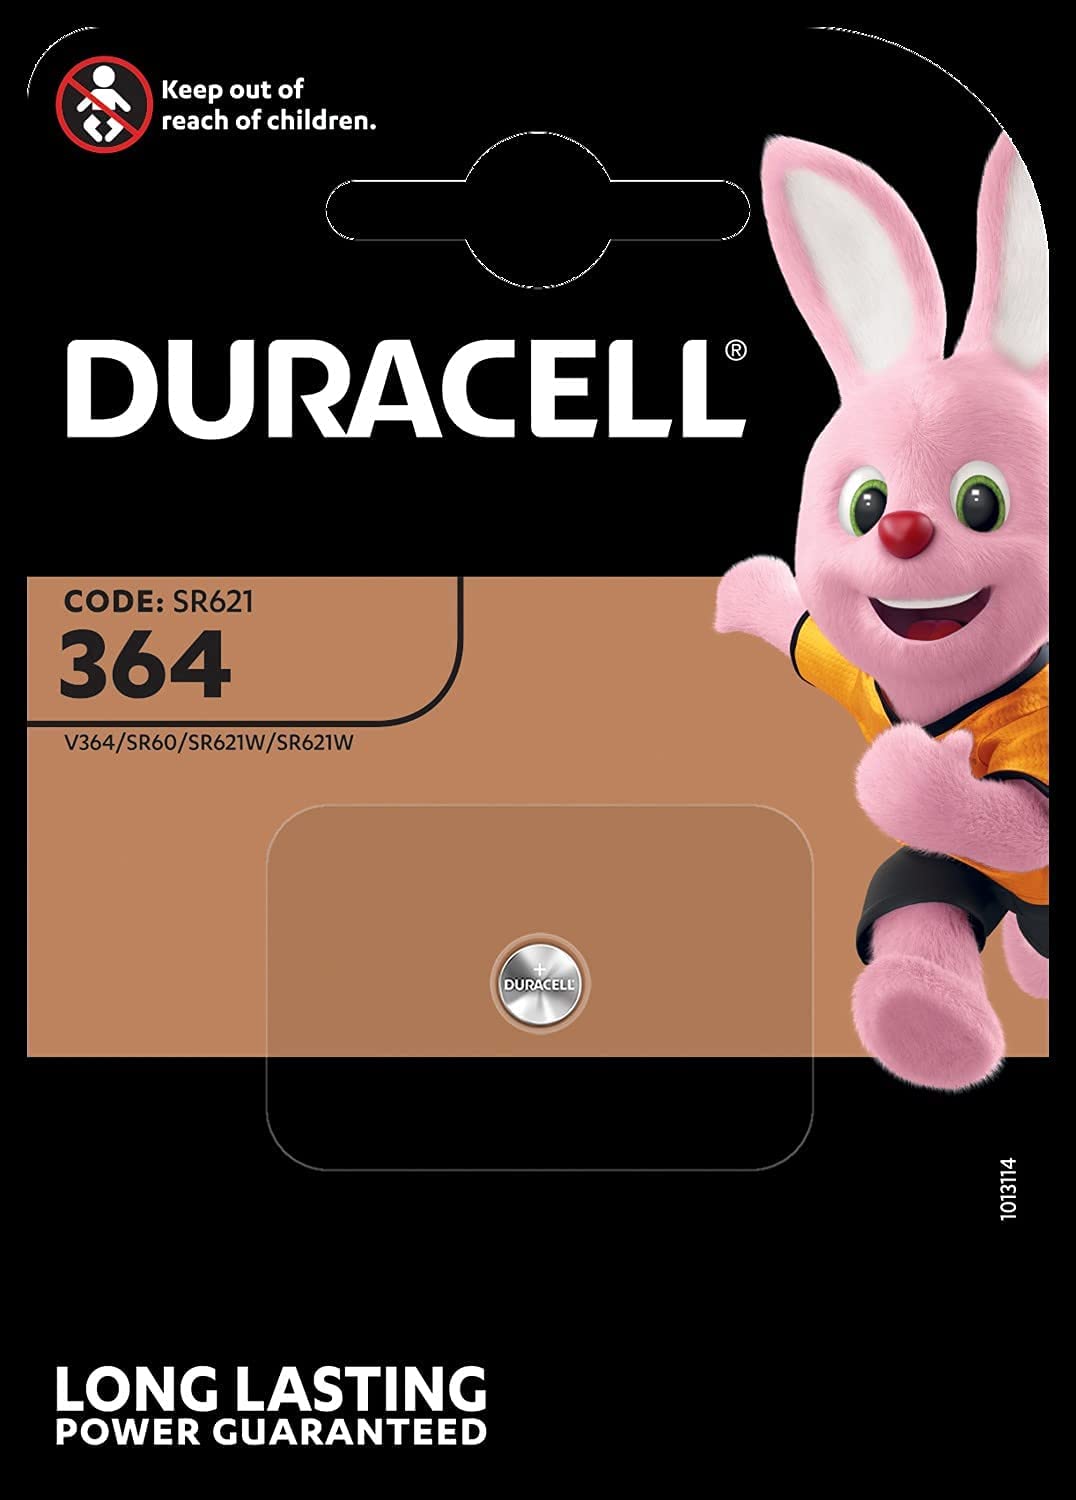 Duracell Duracell Specialty 364 SR621 1er-Pack 1.5V SiO Uhrenbatterie D364 364 SR60 